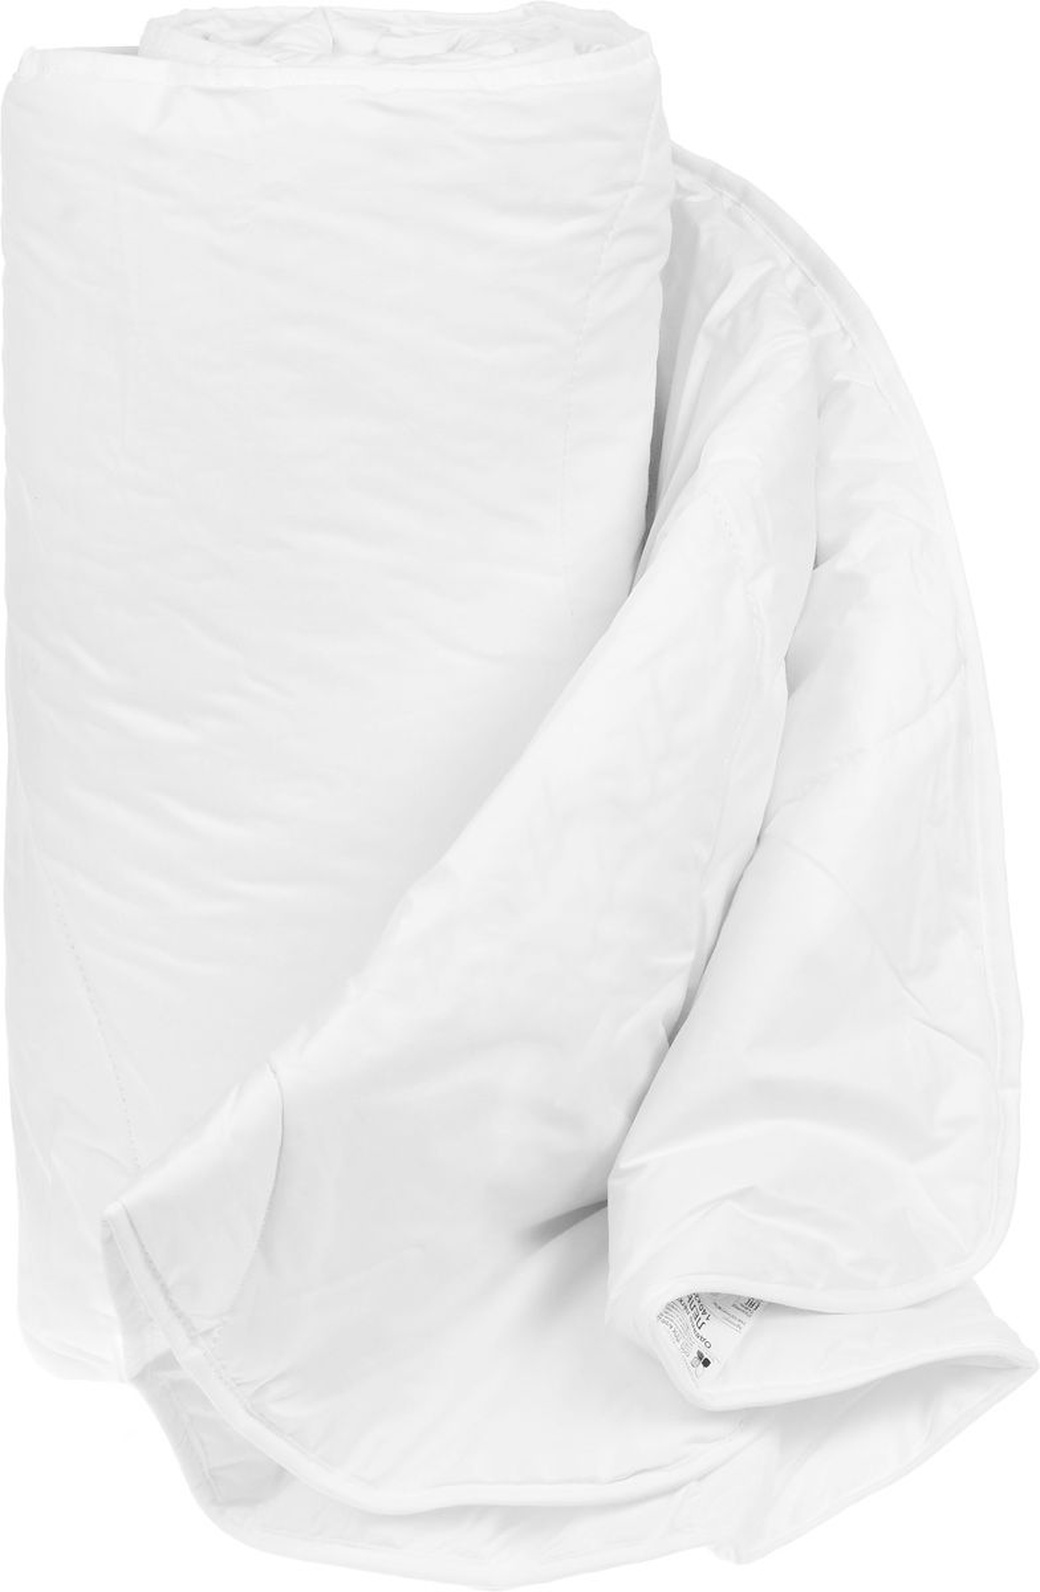 Одеяло Агро-Дон коллекция Лель микроволокно Лебяжий пух 200х220 легкое фото